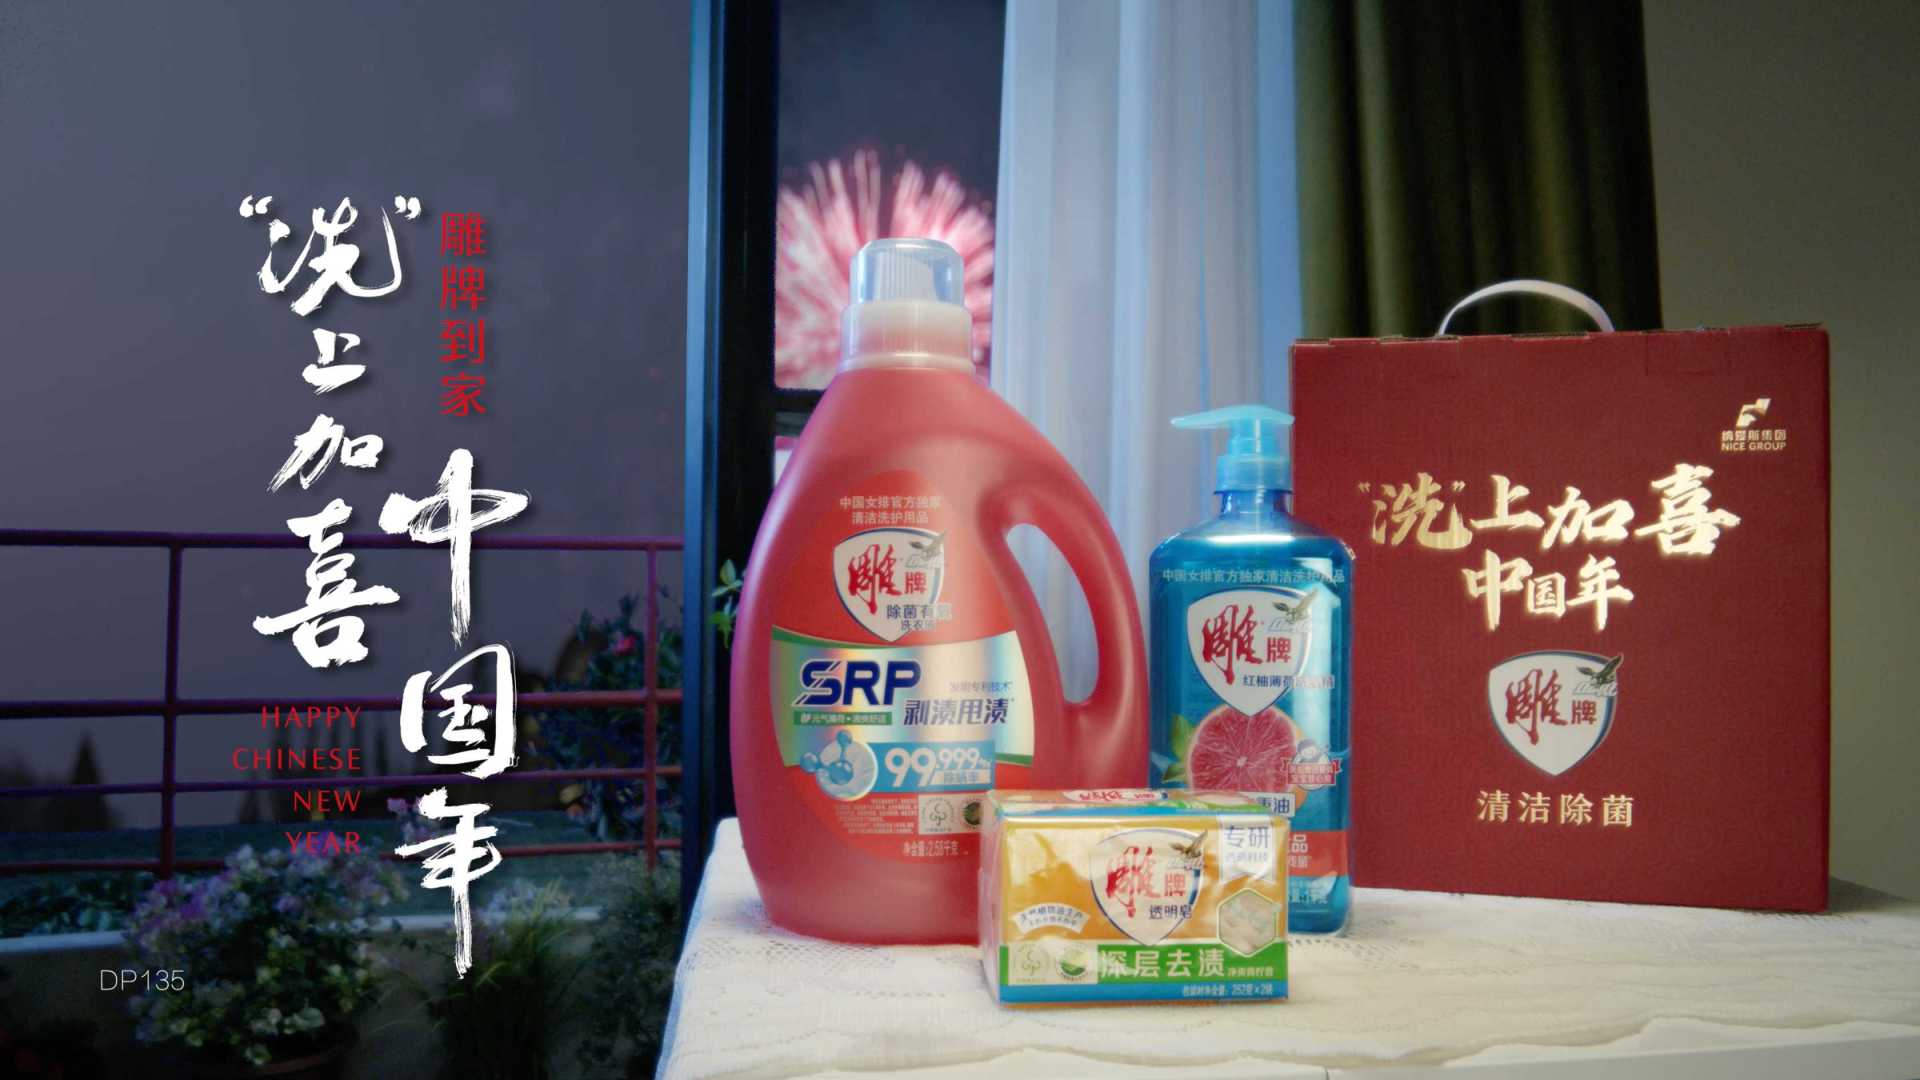 《“洗”上加喜中国年》—雕牌CNY